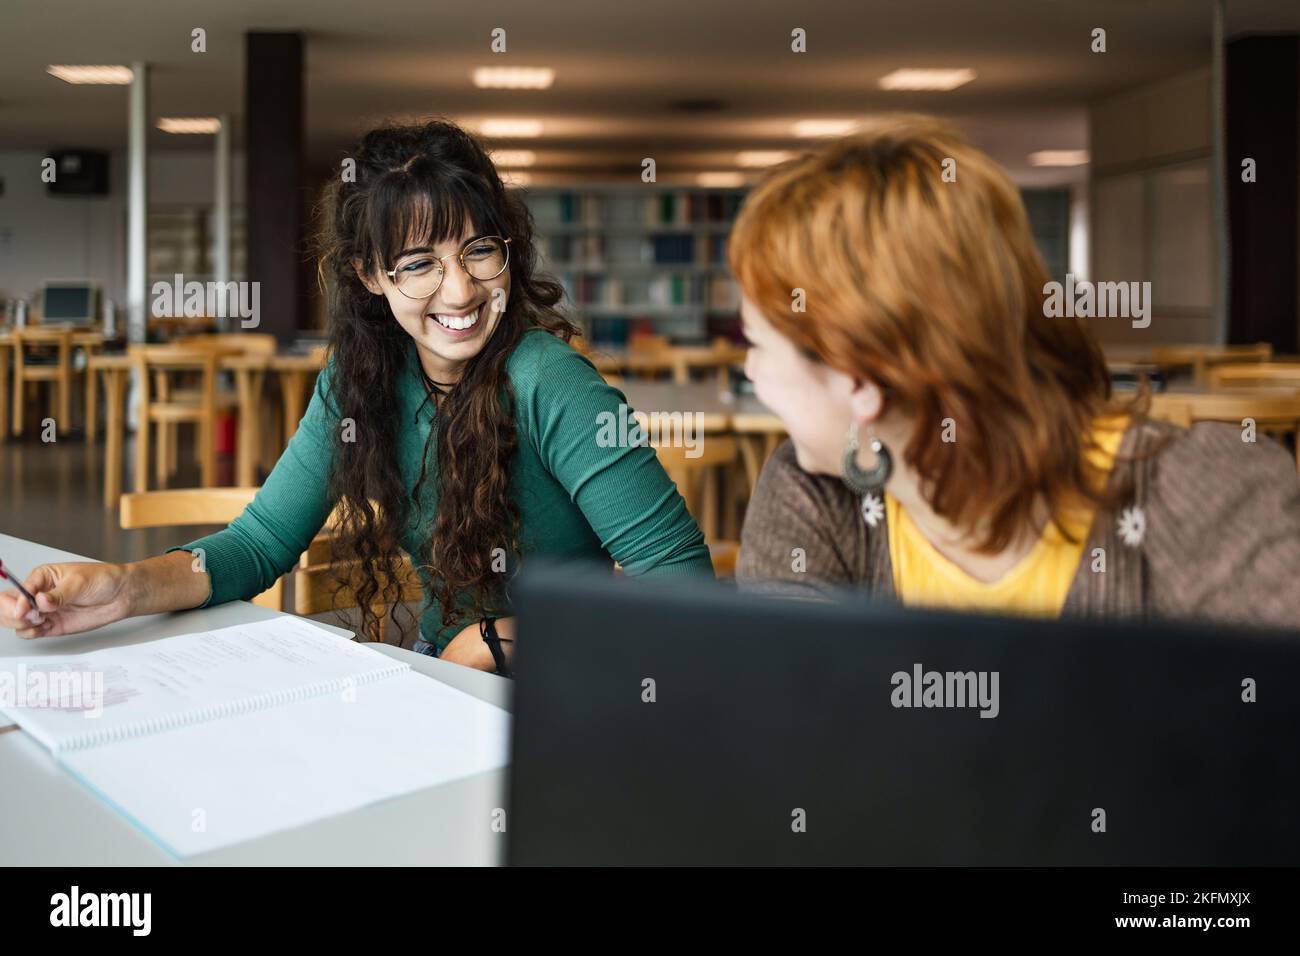 Junge Mädchen studieren in der Bibliothek - Schulbildung Konzept Stockfoto